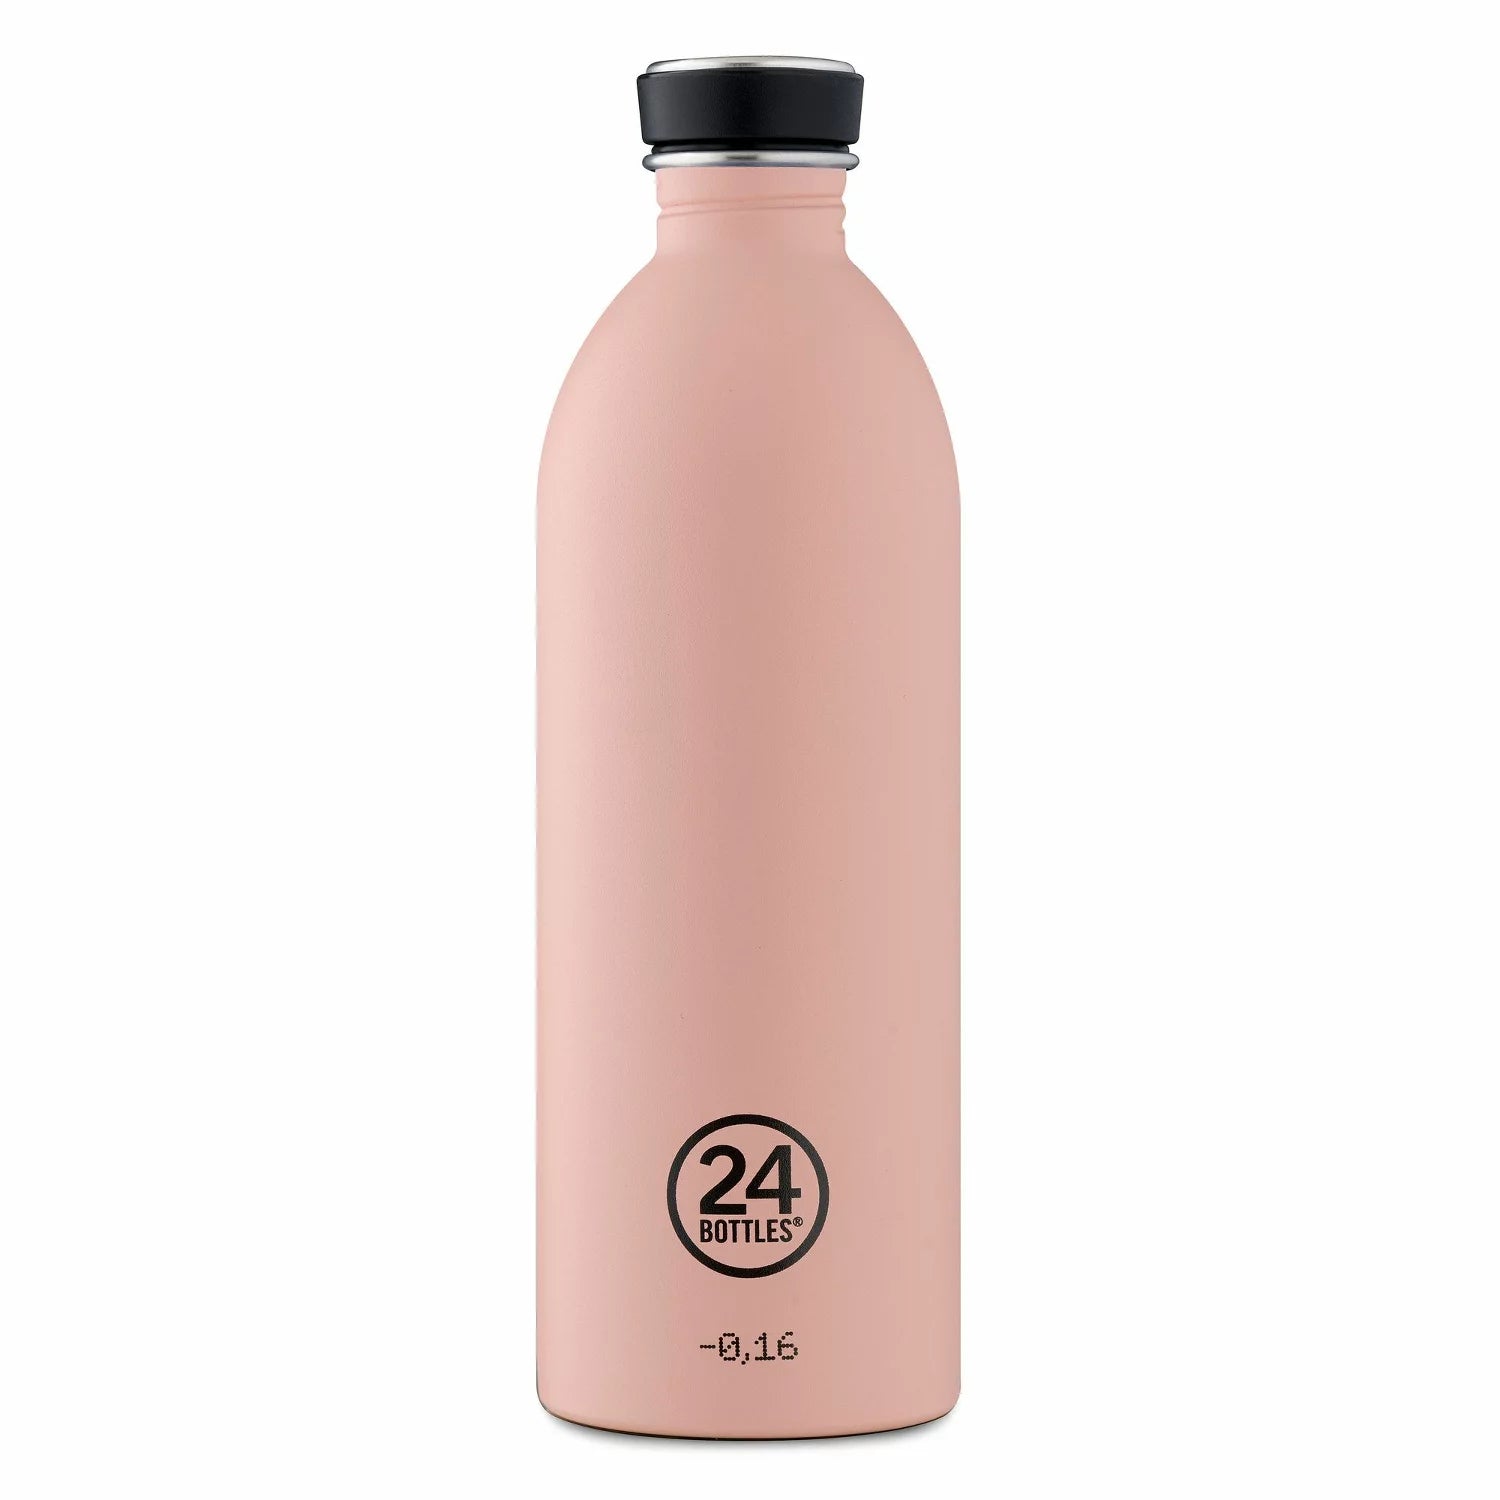 24 Bottles Urban Bottle 500ml Dusty Pink